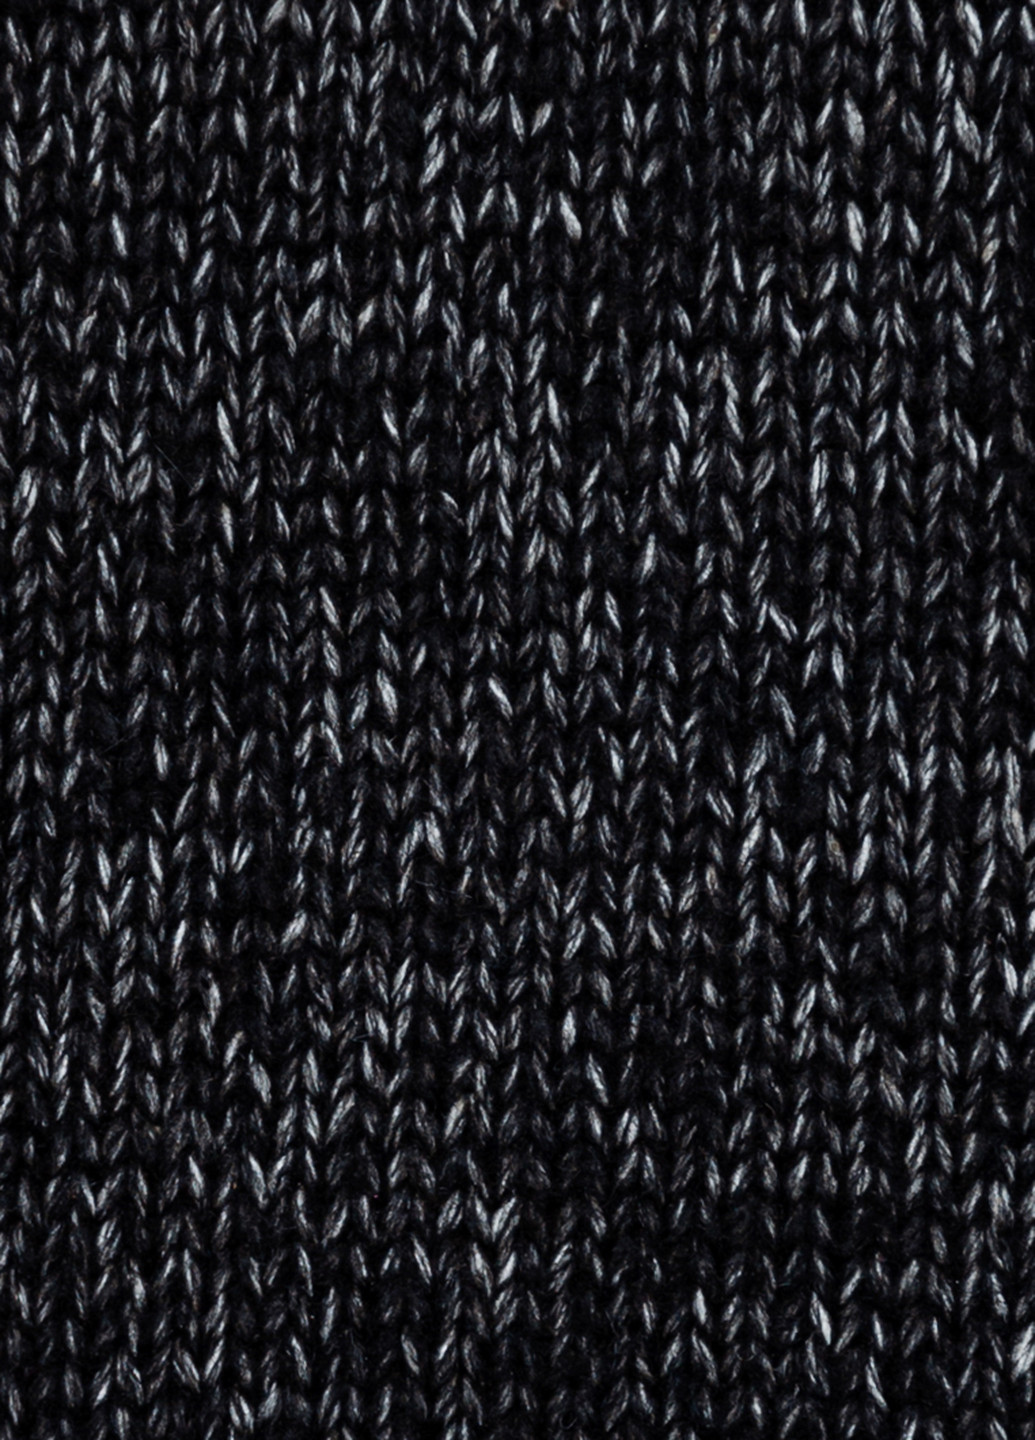 Черный демисезонный свитер женский Arber V-neck WL1 WTR-86